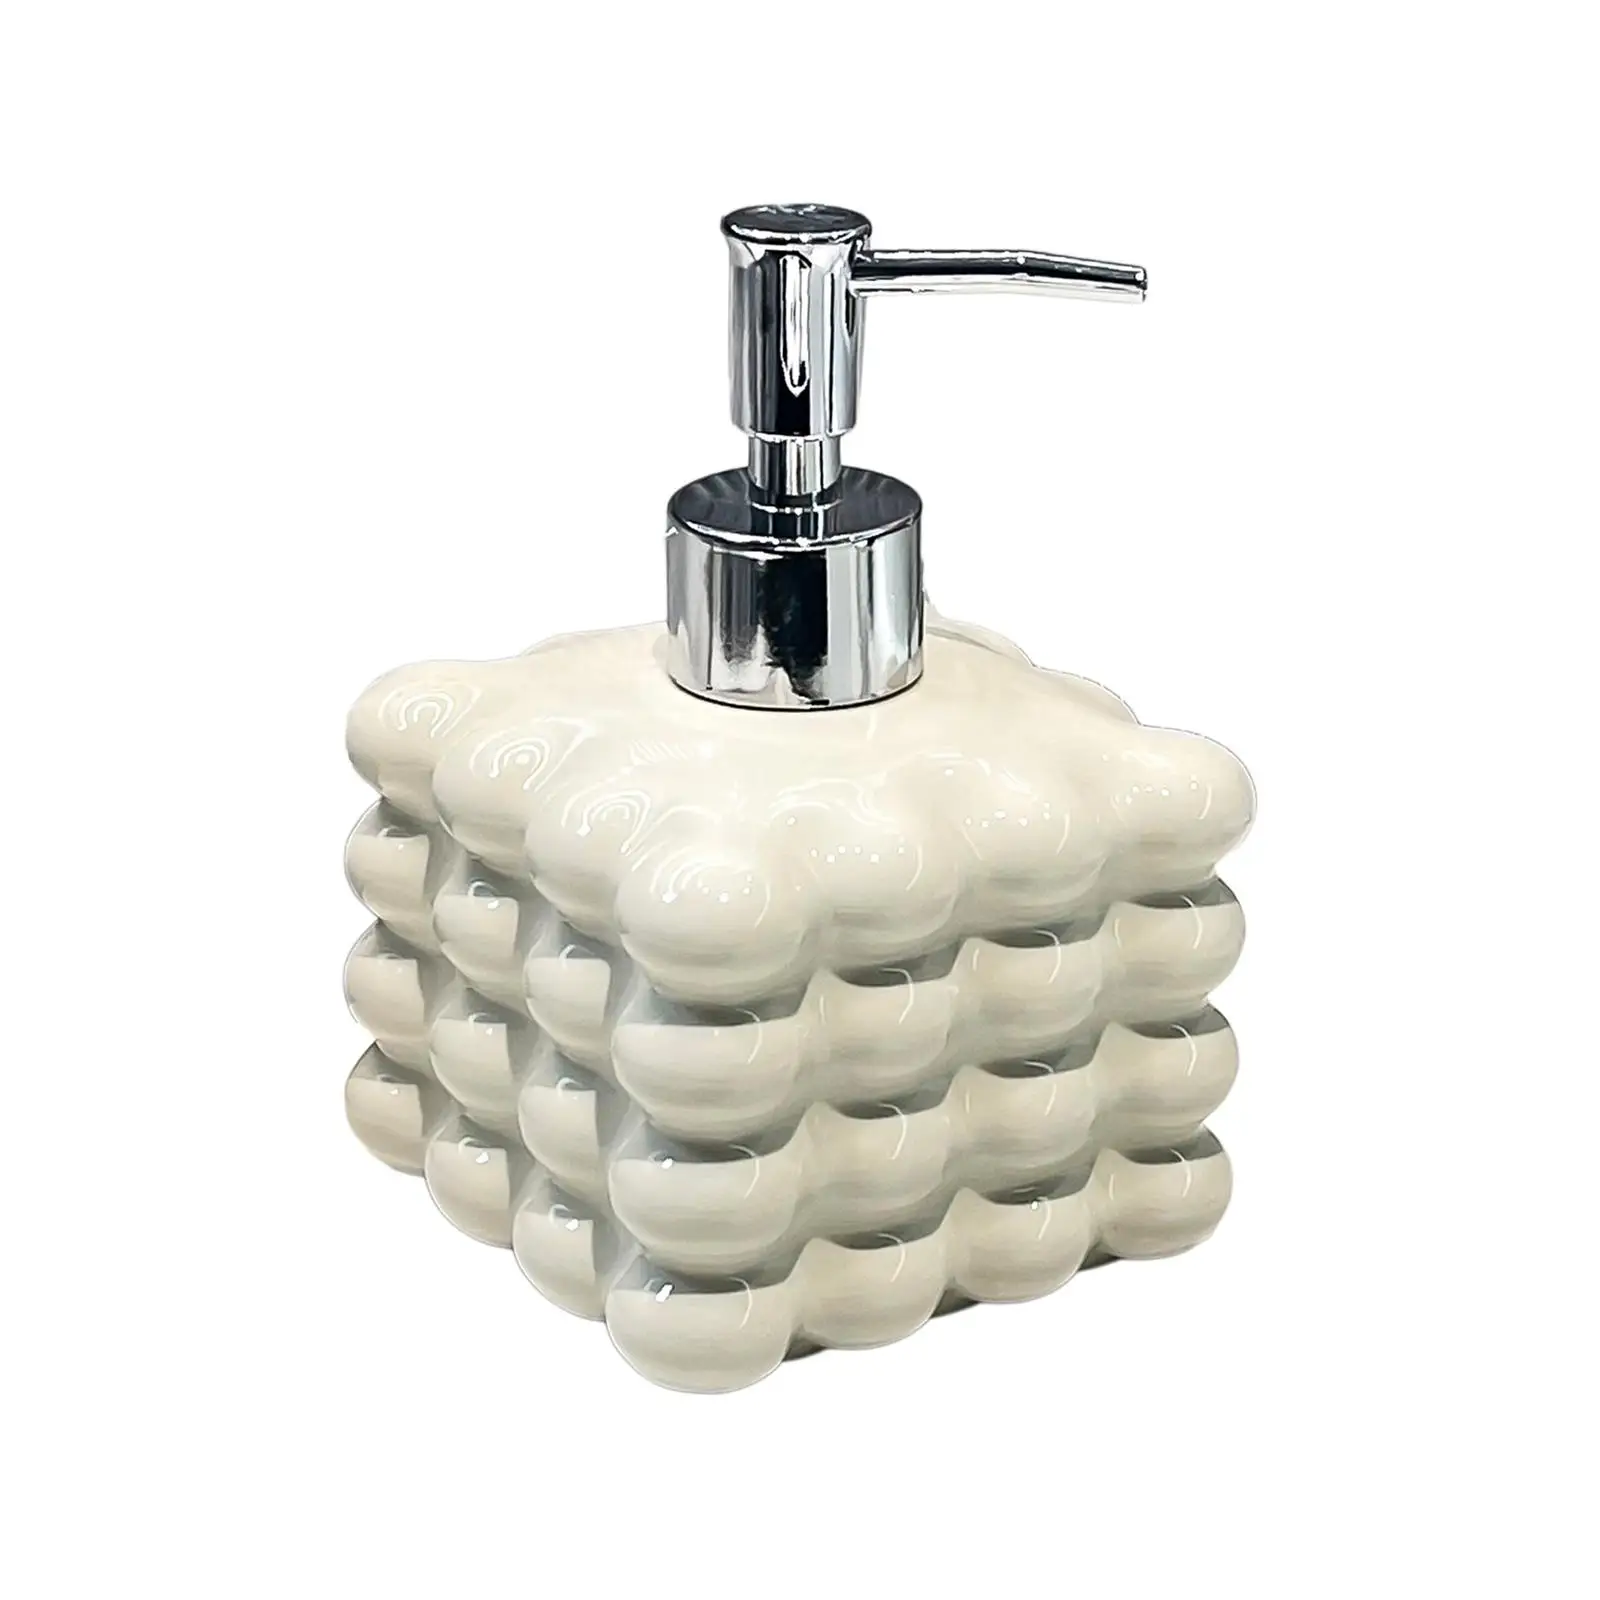 Lotion Dispenser, Ceramic Lotion Bottle 370ml Shower Gel Dispenser Soap Dispenser for Hotel Bathroom,